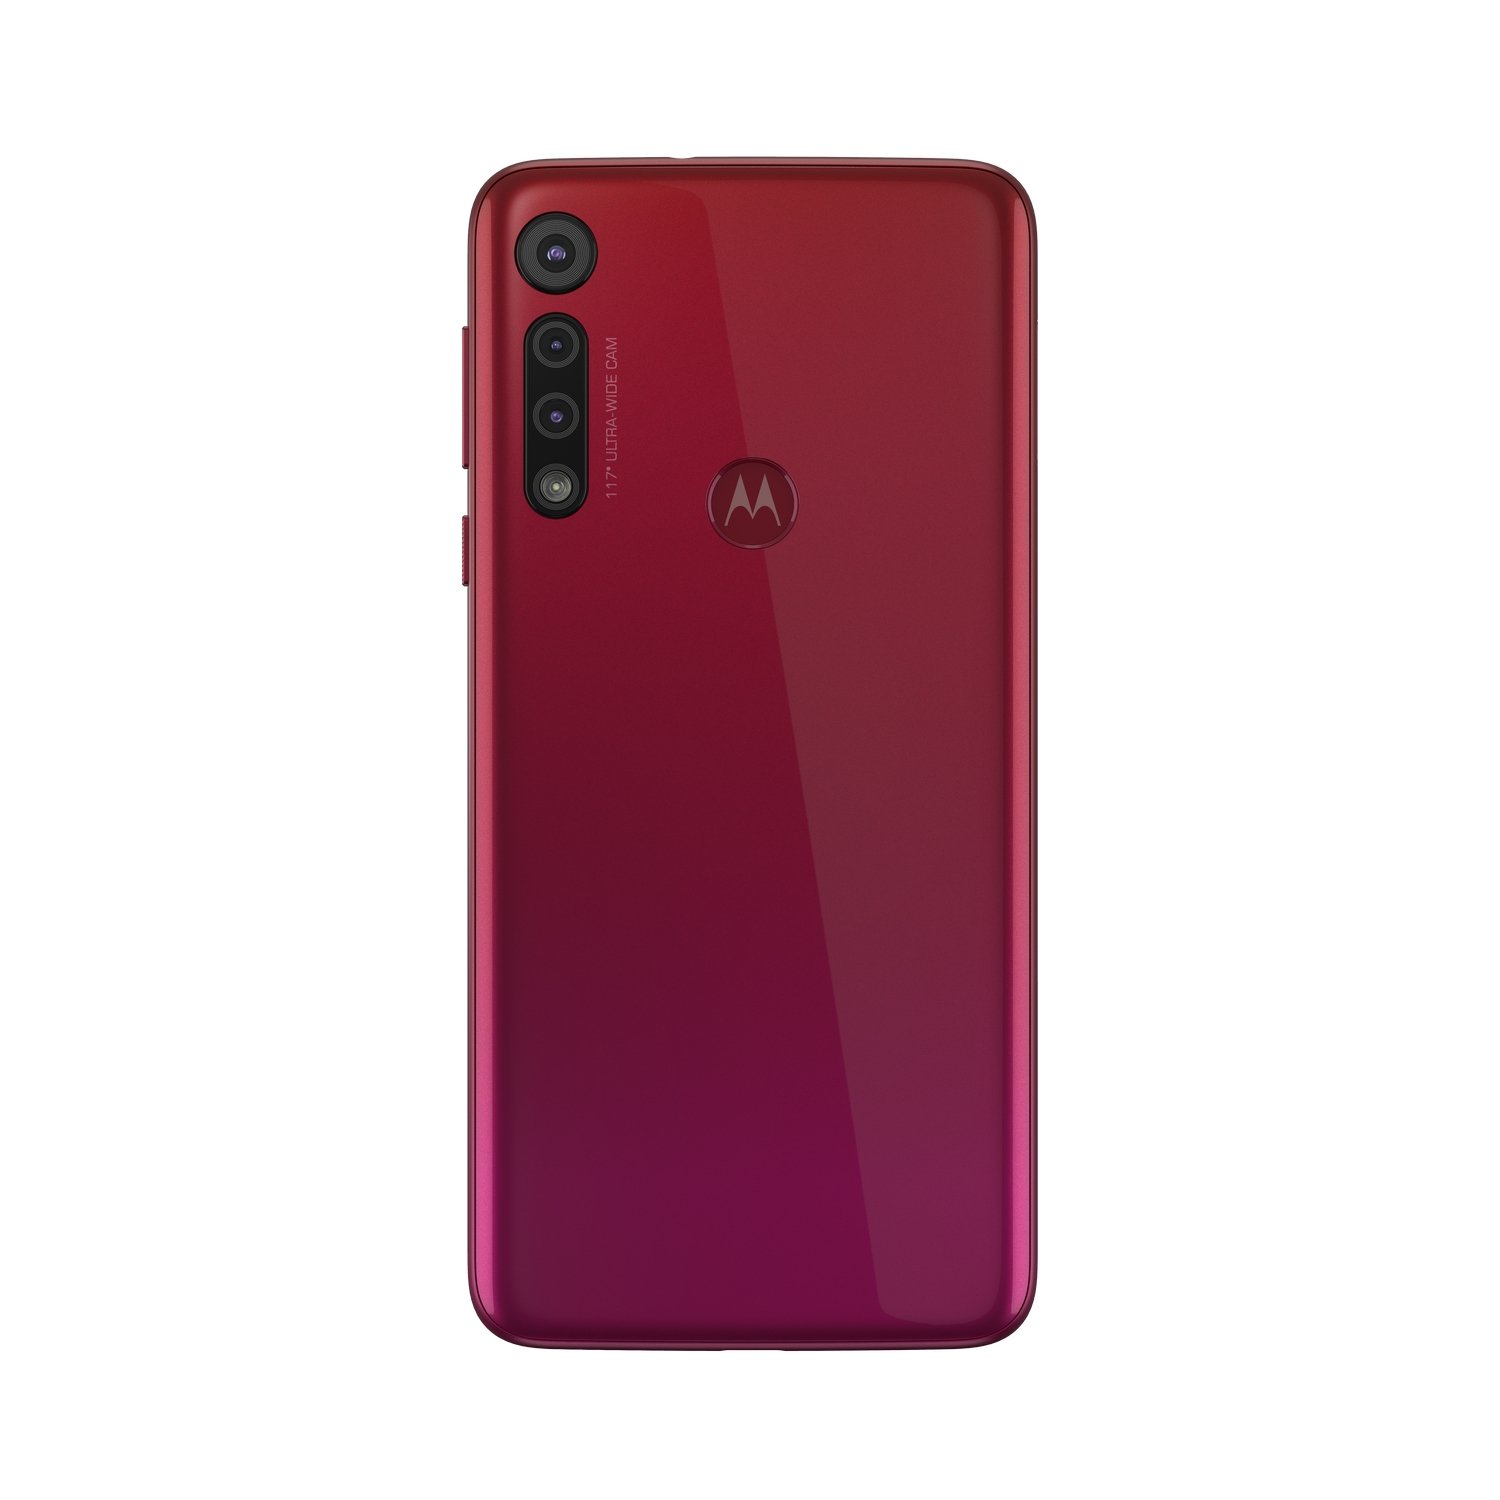 Motorola Moto G8 Play características y especificaciones